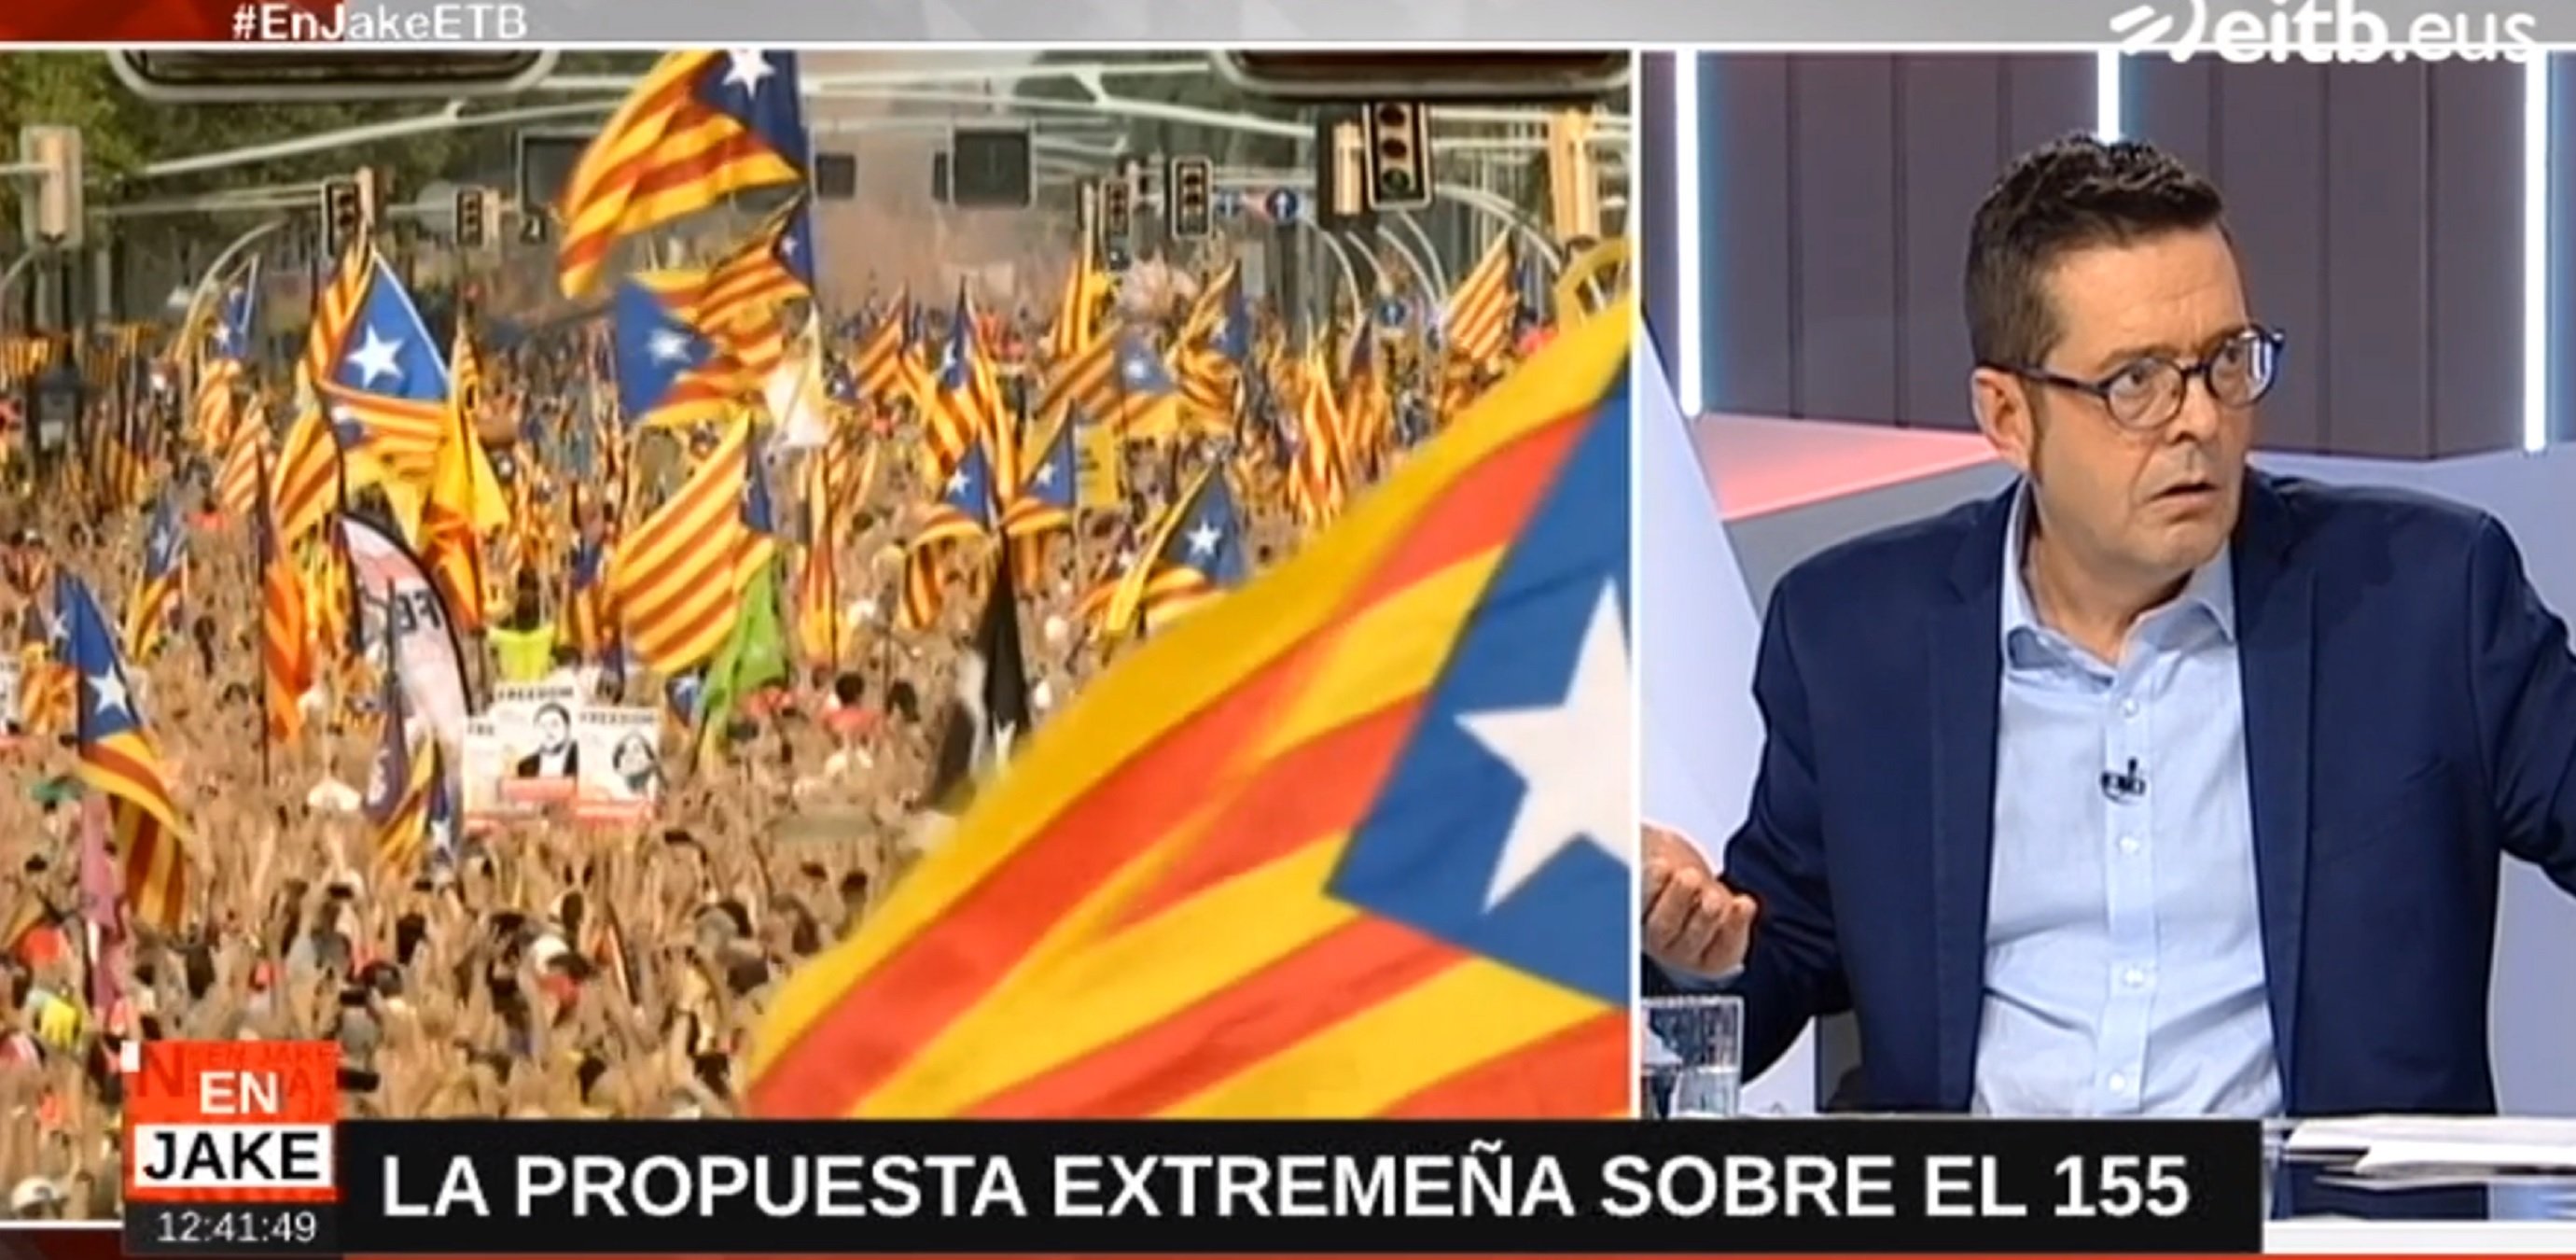 La TV basca contra la catalanofòbia extremenya del 155: "colonialismo y caspa"